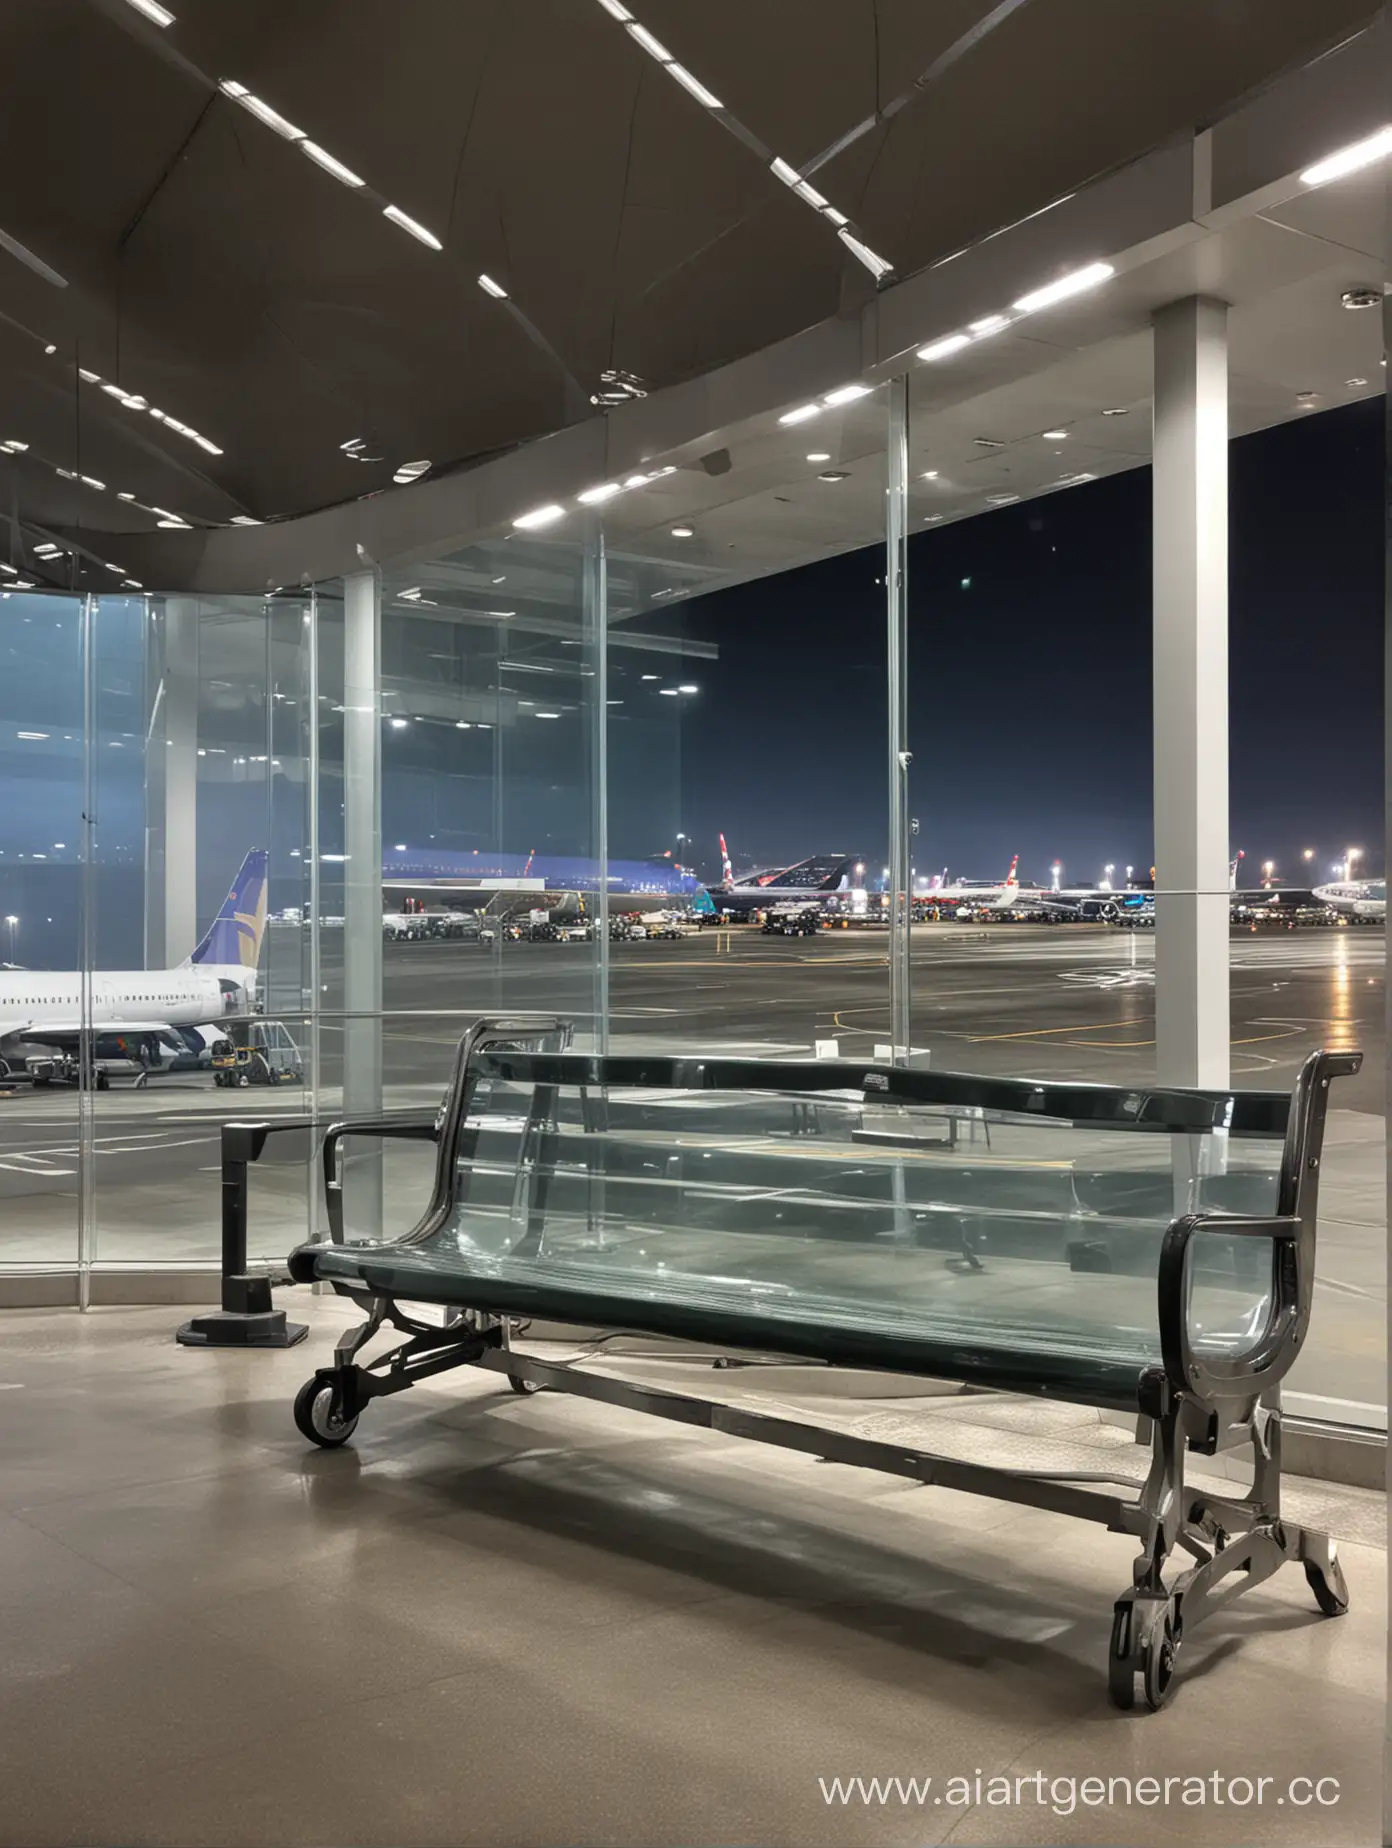 Лавочка в аэропорте внутри здания расположенная горизонтально фотографии,сзади лавочки прозрачное стекло и видно взлетную полосу ночное фото